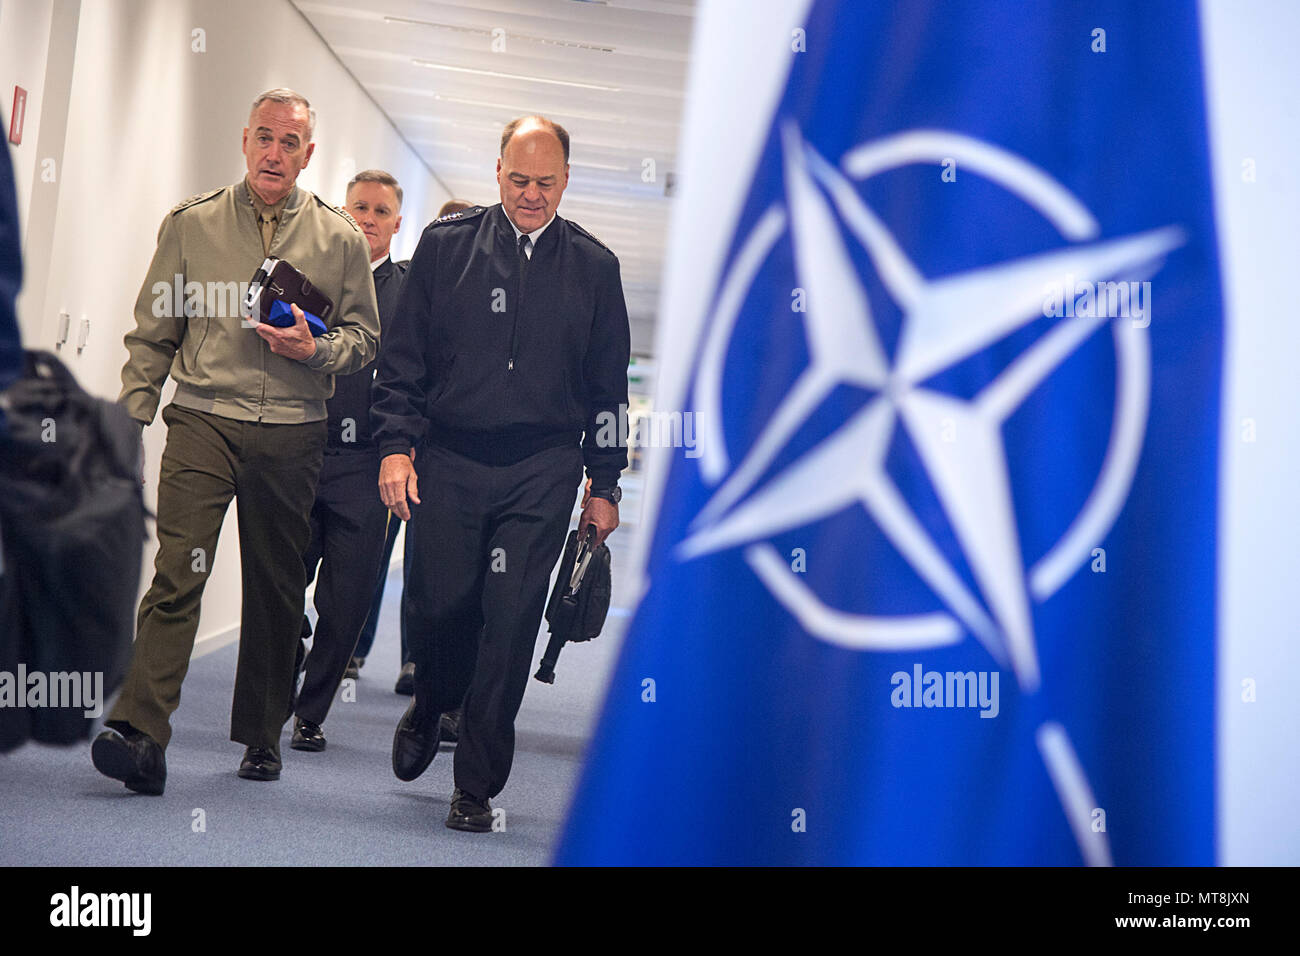 Нато 32. НАТО нацисты. Саммит НАТО. Офицер НАТО фото. Собрание НАТО.